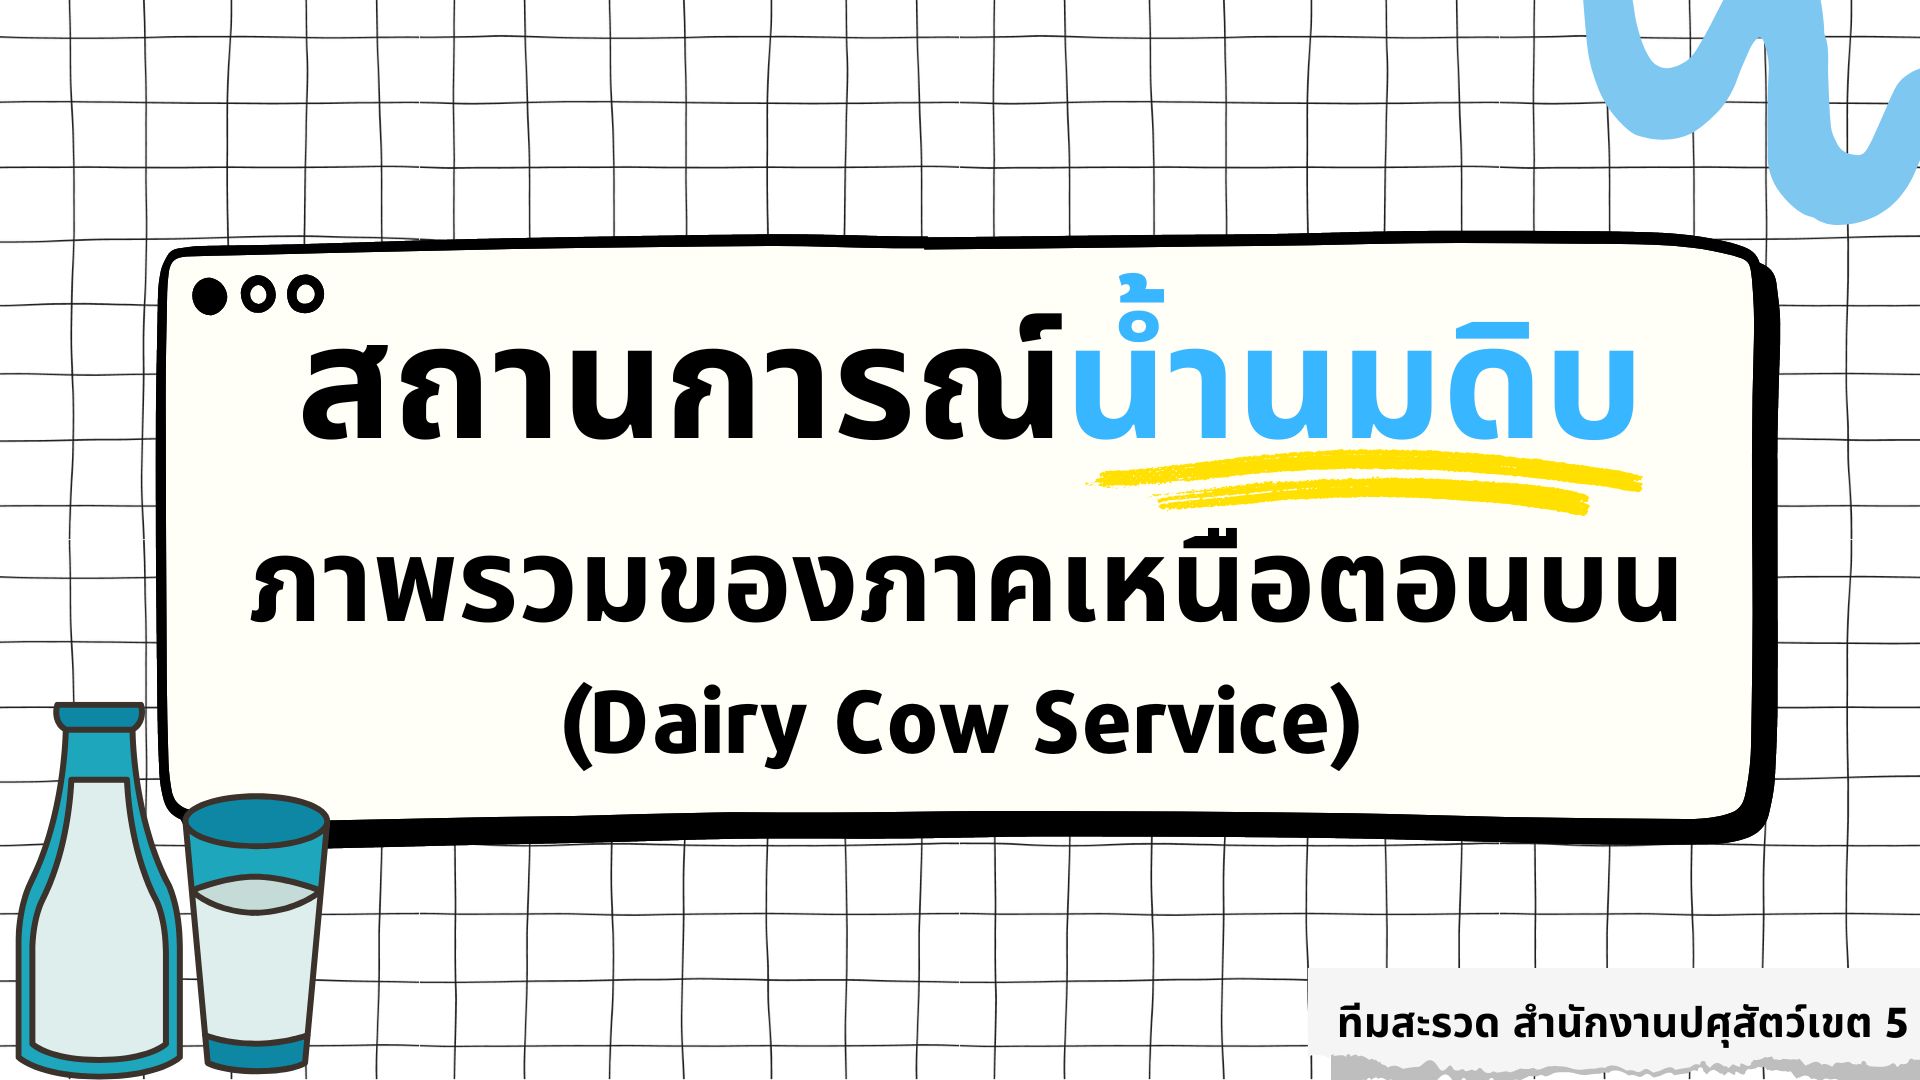 สถานการณ์น้ำนมดิบ ภาพรวมของภาคเหนือตอนบน "Dairy Cow Service"